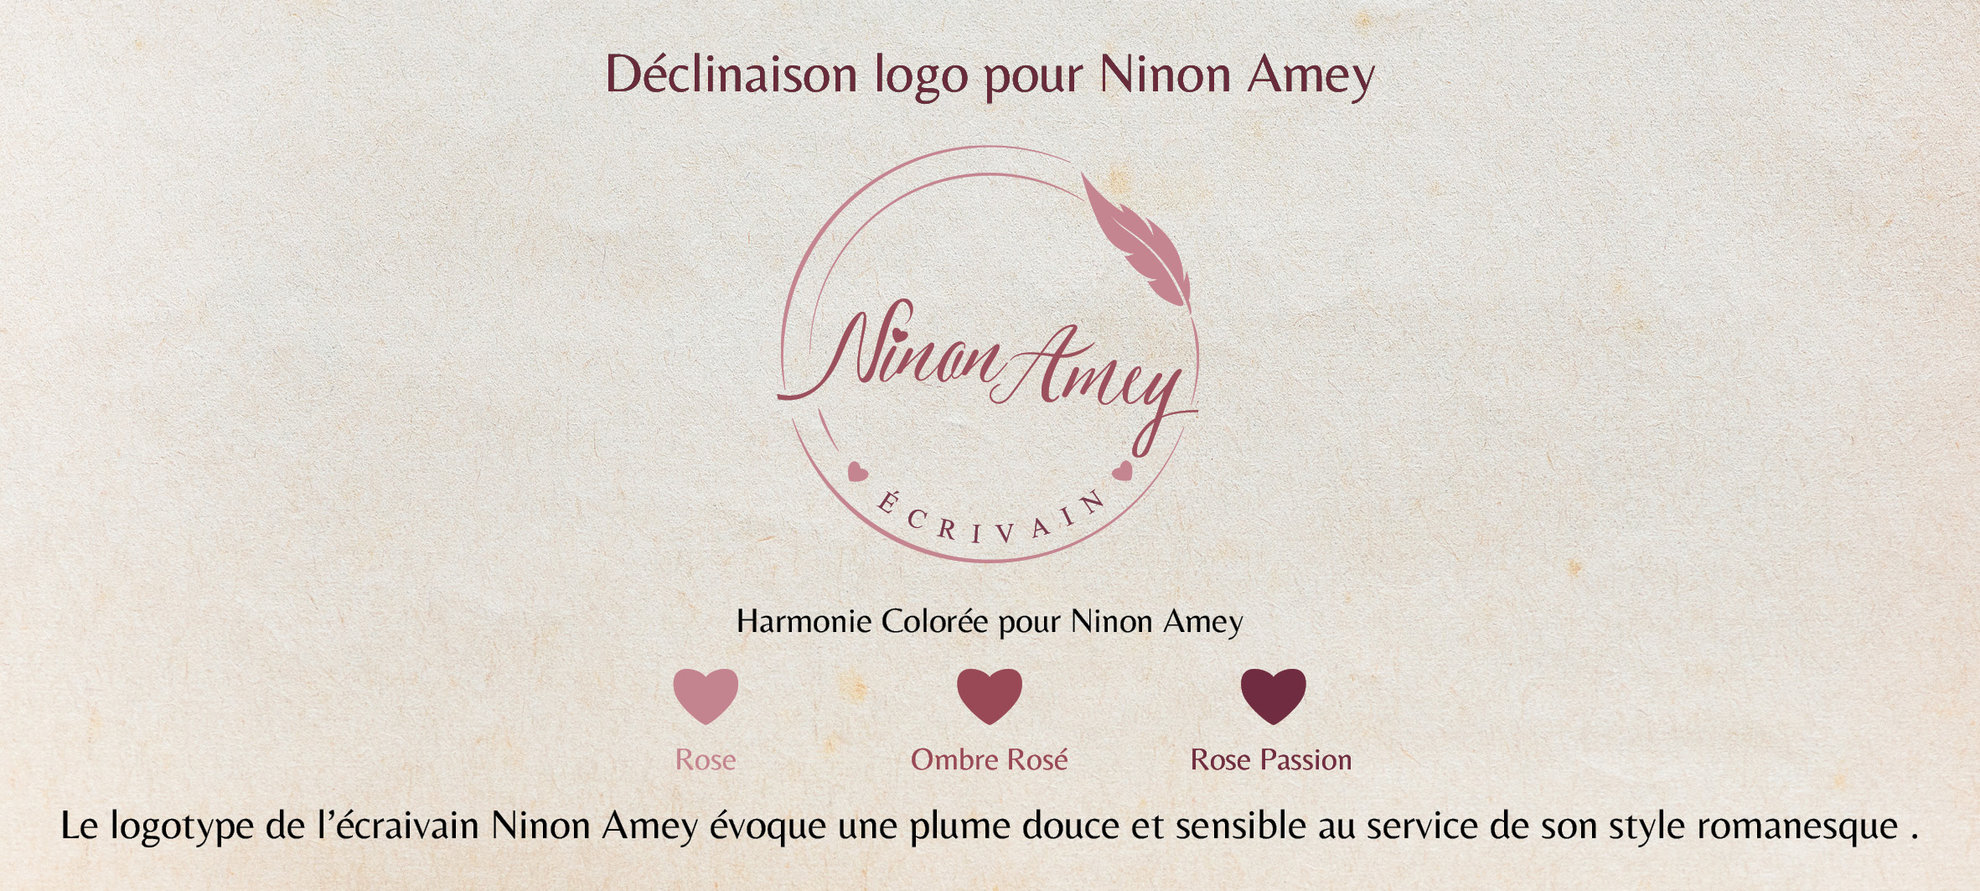 Logotype et déclinaison pour Ninon Amey écrivain.